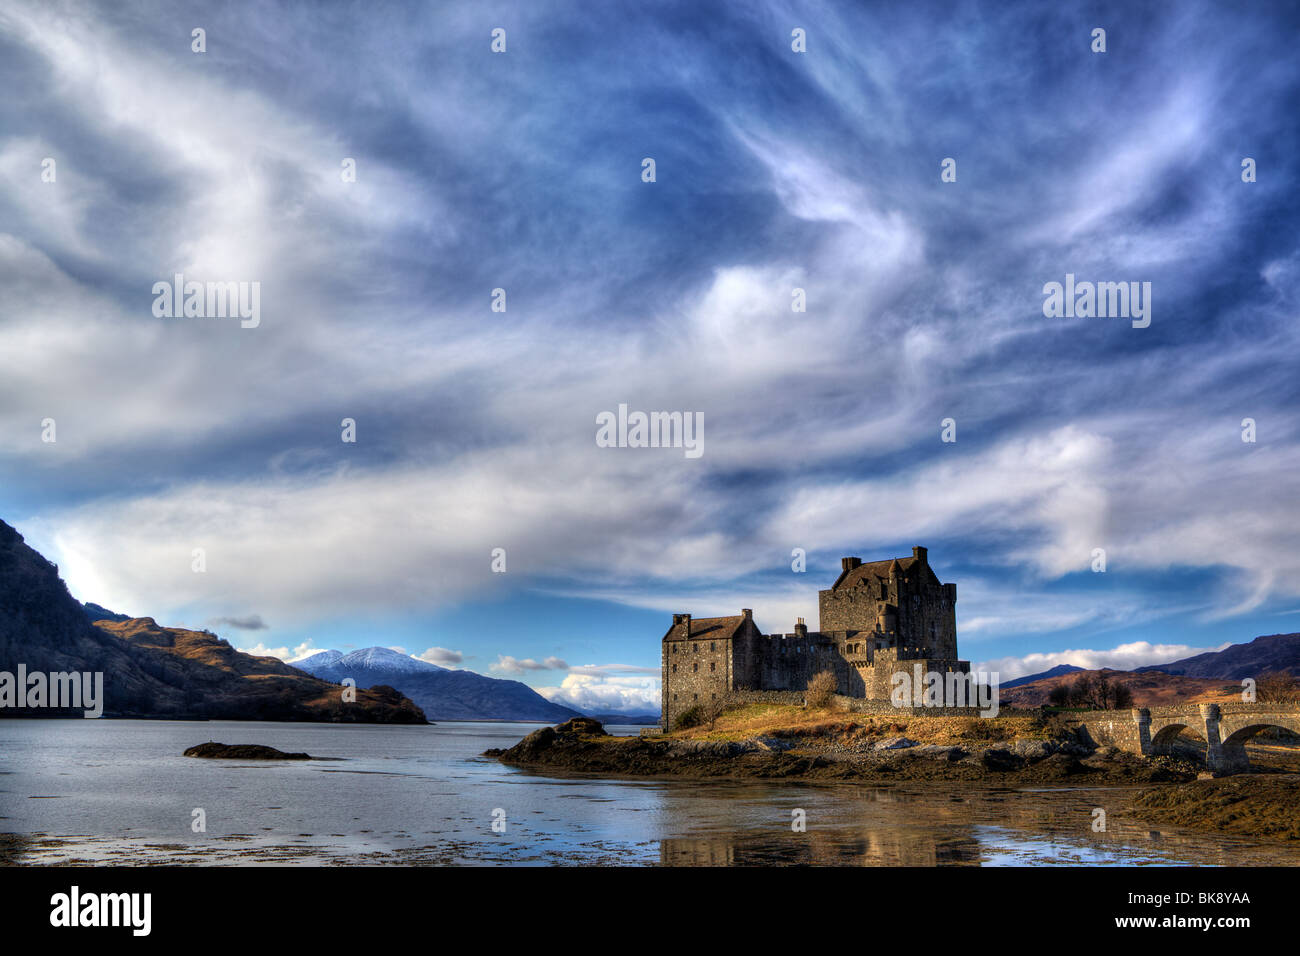 Loch side castle in Scotland Stock Photo